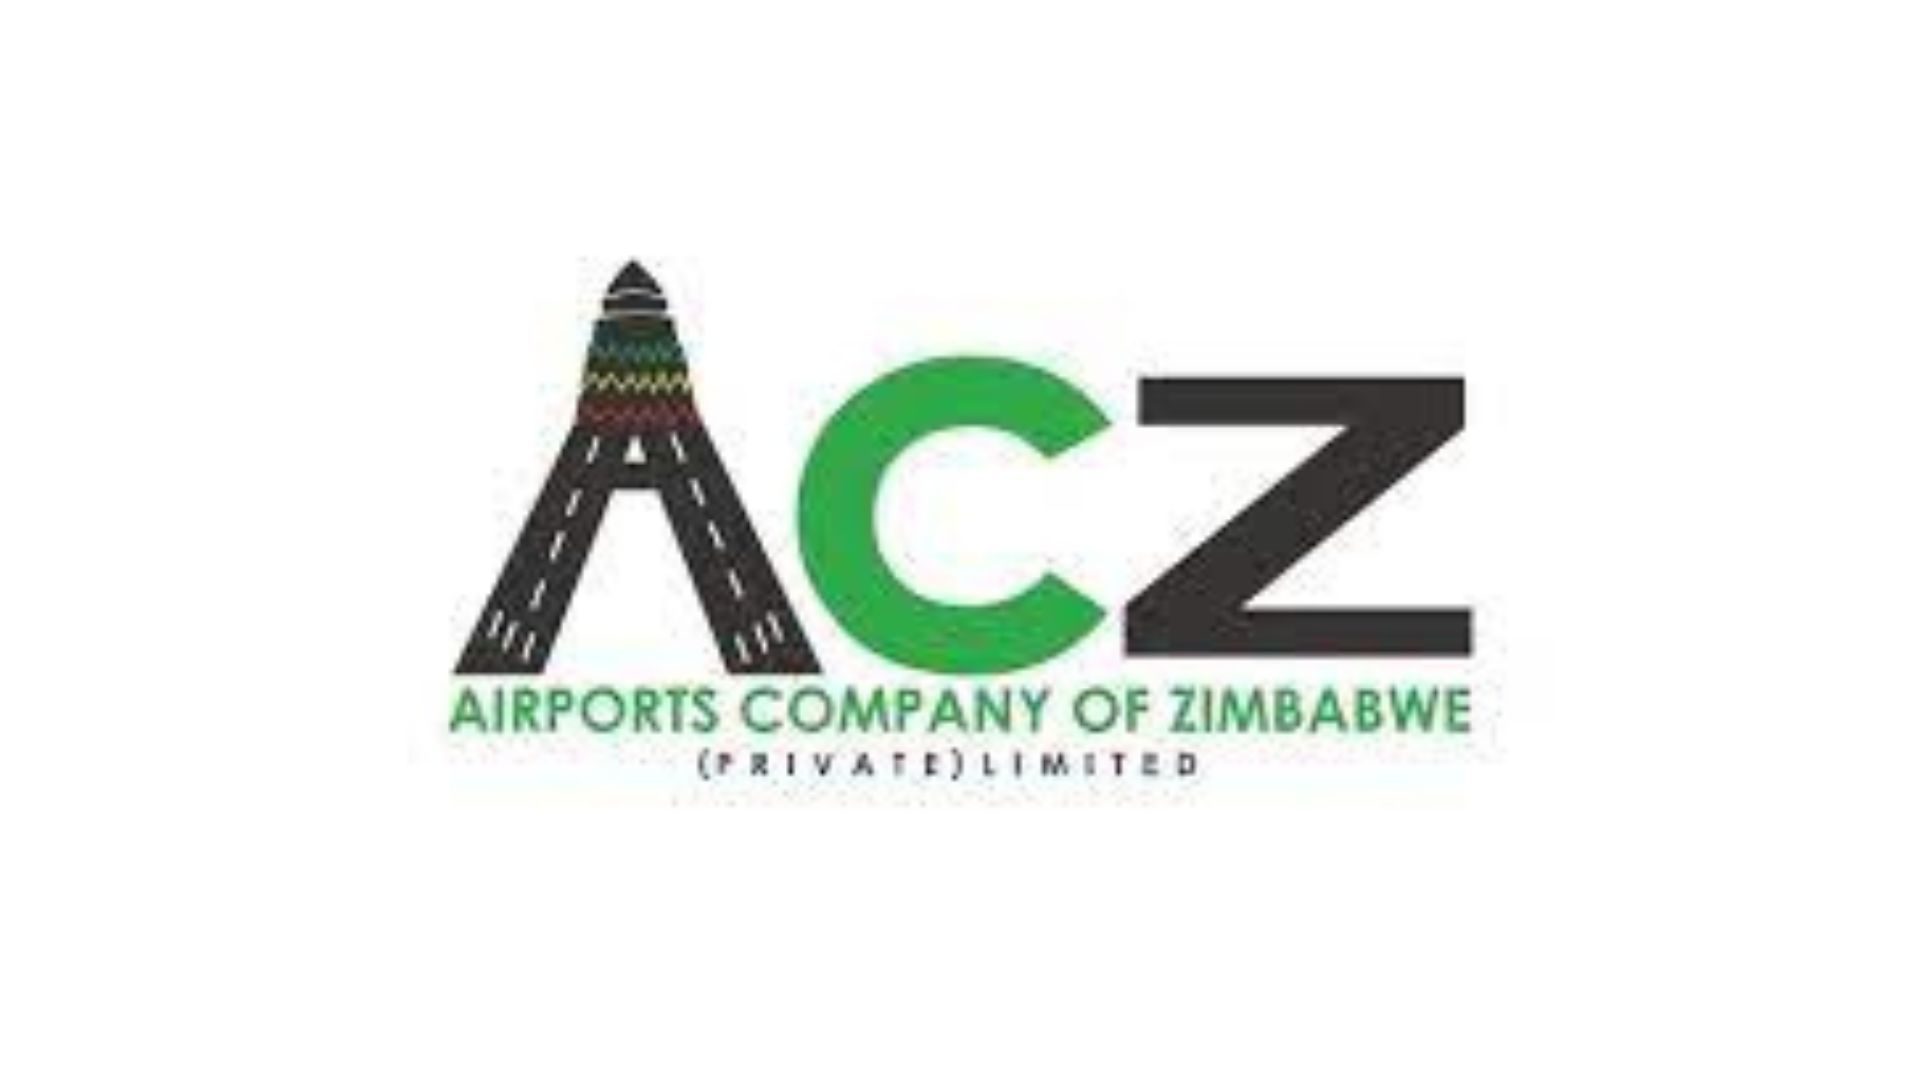 Airports Company of Zimbabwe